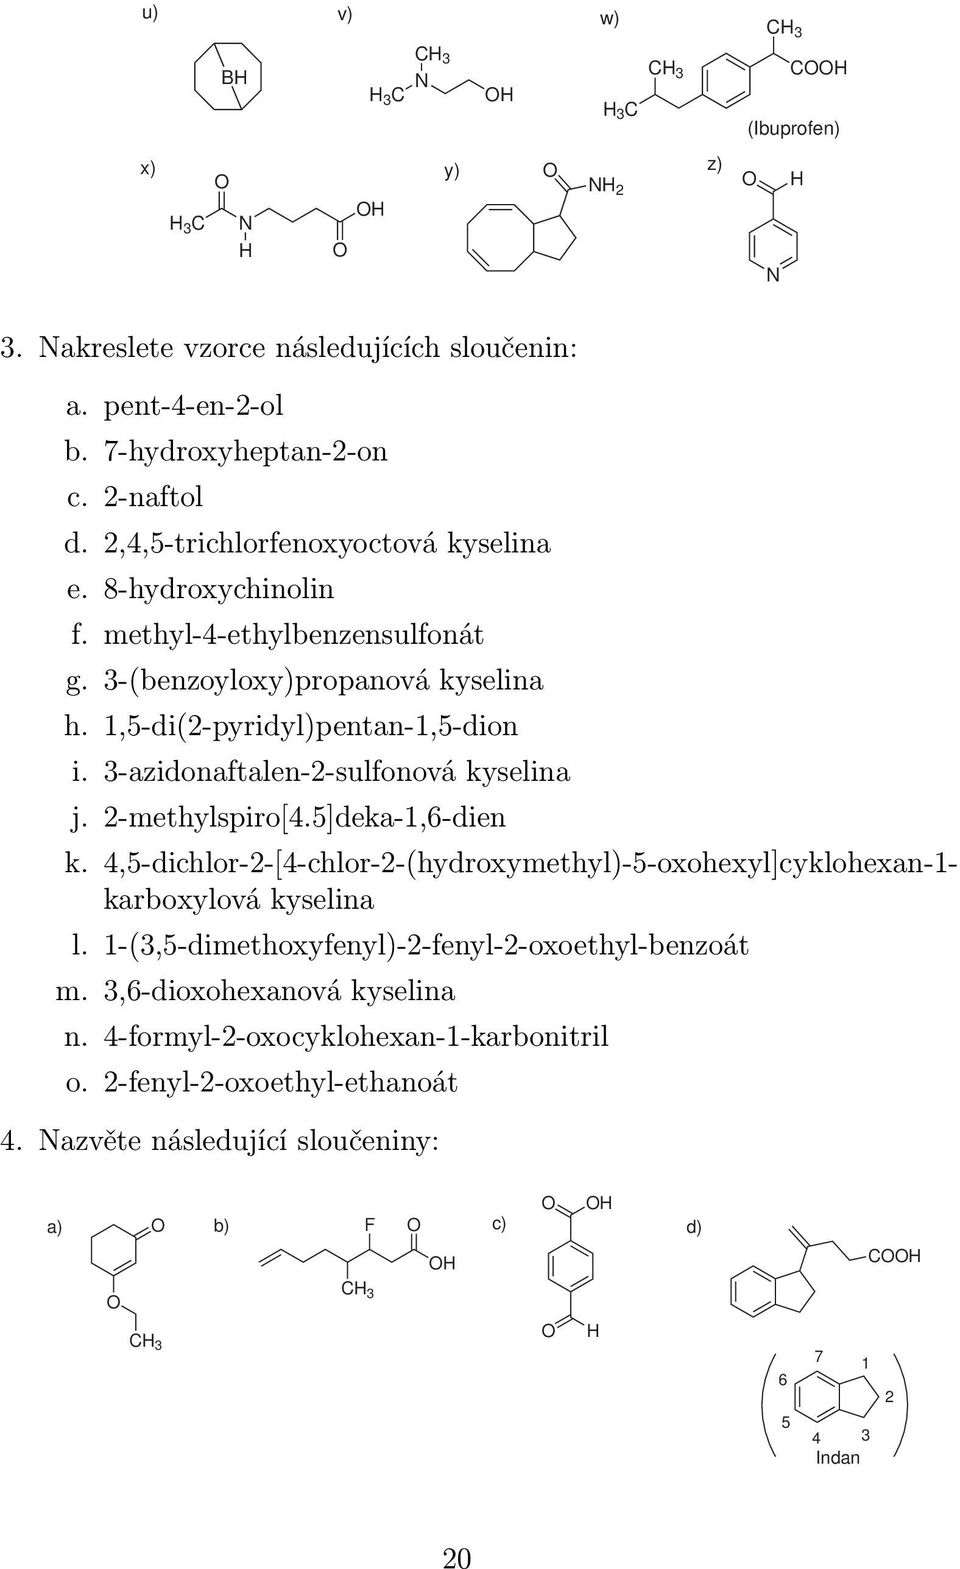 3-azidonaftalen-2-sulfonová kyselina j. 2-methylspiro[4.5]deka-1,6-dien k. 4,5-dichlor-2-[4-chlor-2-(hydroxymethyl)-5-oxohexyl]cyklohexan-1- karboxylová kyselina l.